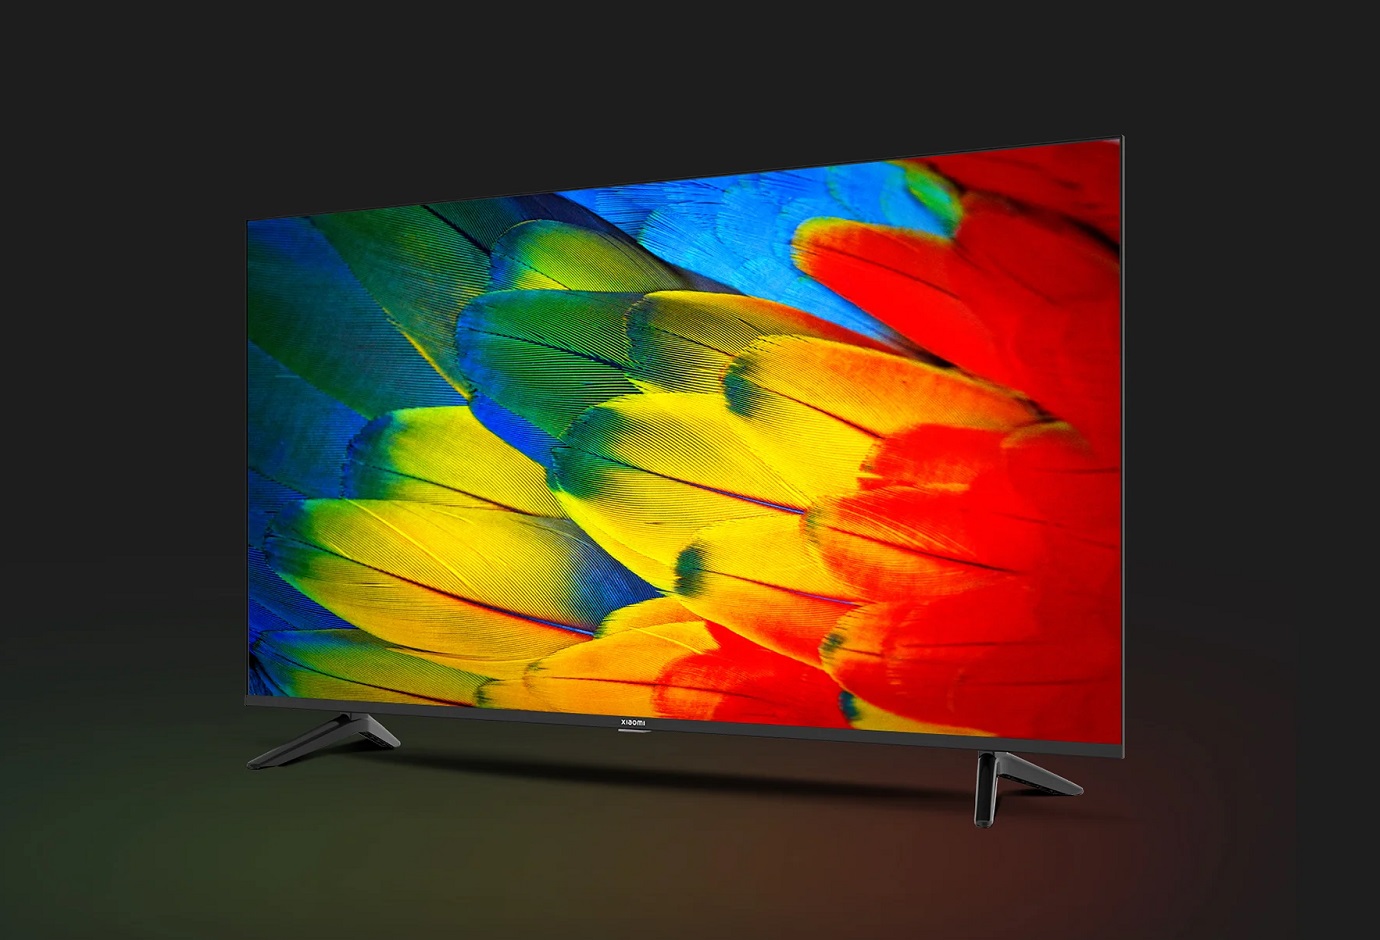 серия телевизоров Xiaomi Smart TV X Series 2023